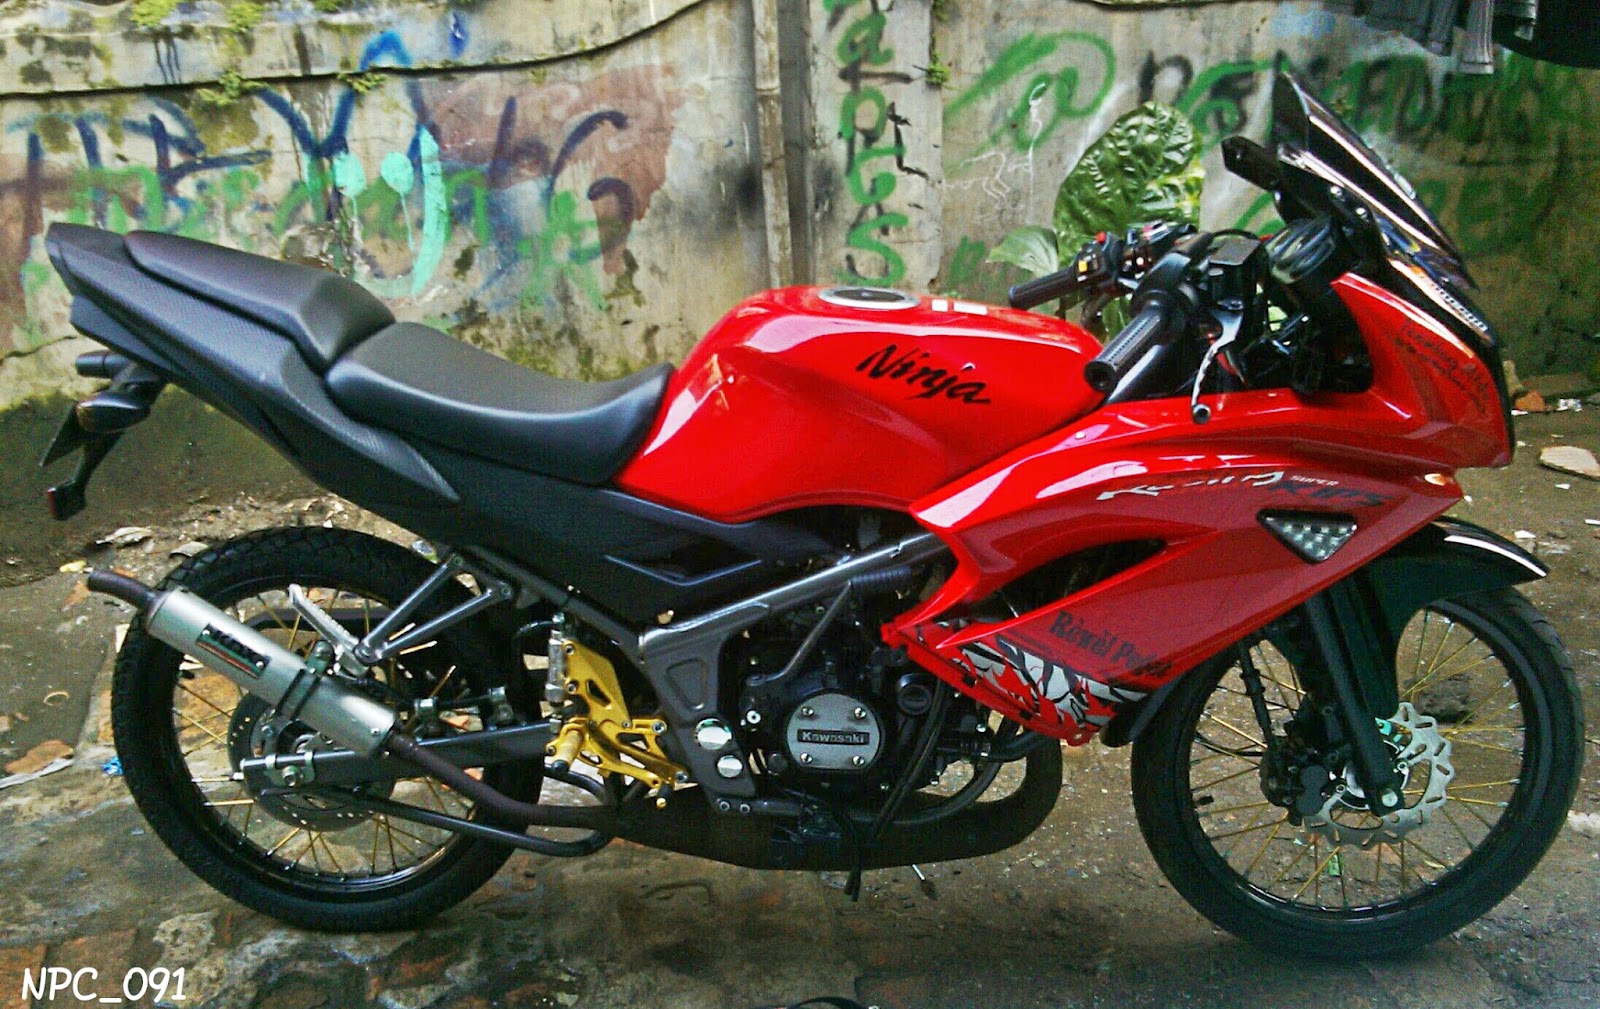 Download 54 Harga Modifikasi Motor Ninja Rr Terbaru Lawang Motor